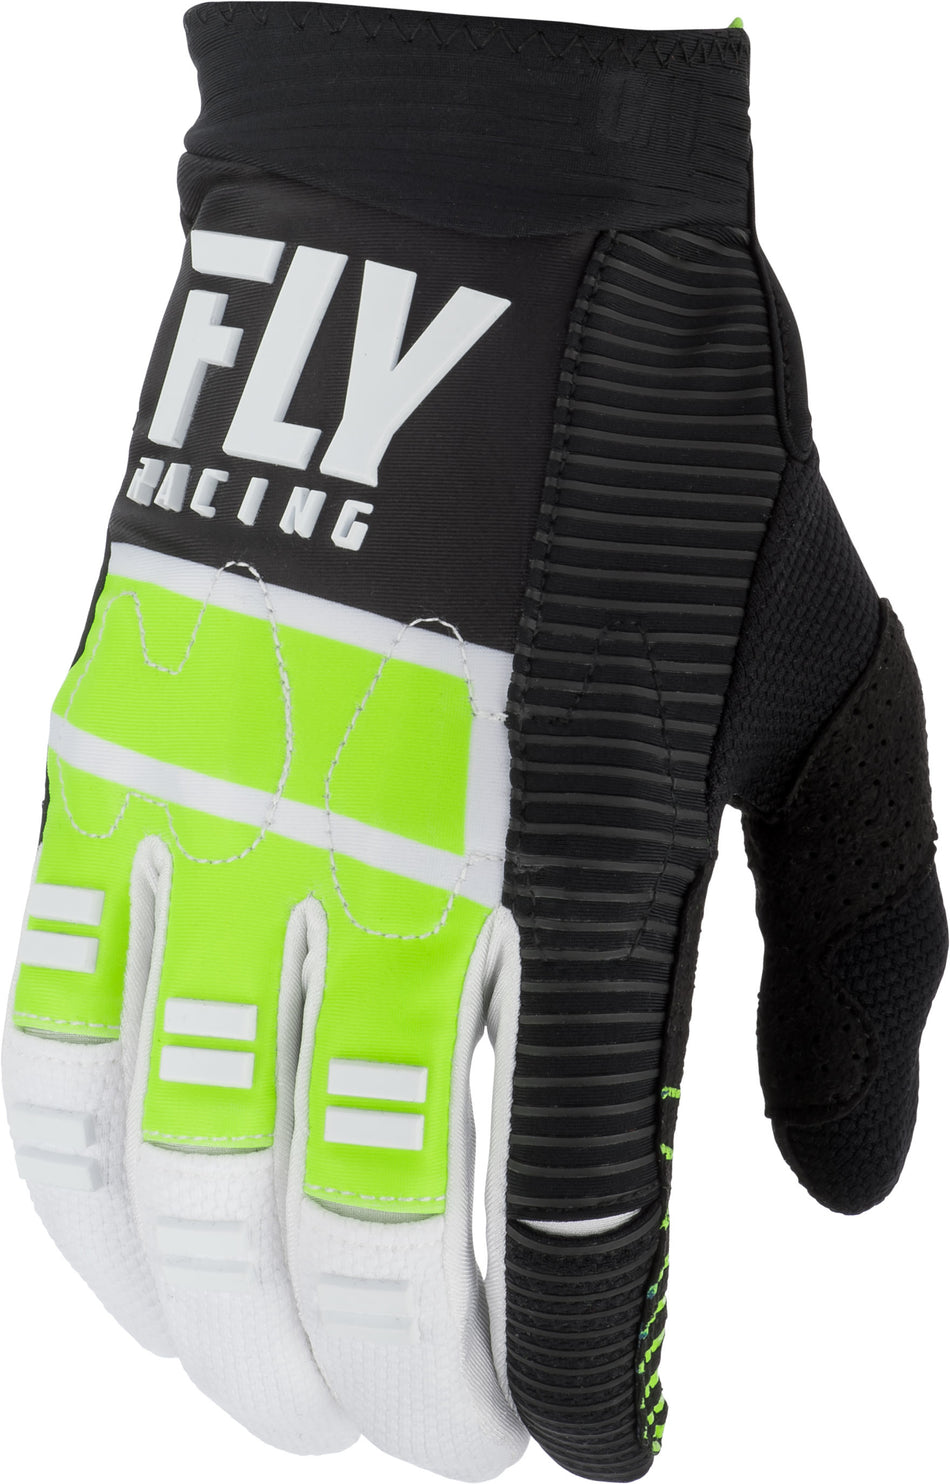 FLY RACING Evolution Dst Gloves Hi-Vis/Black/White Sz 08 372-11708